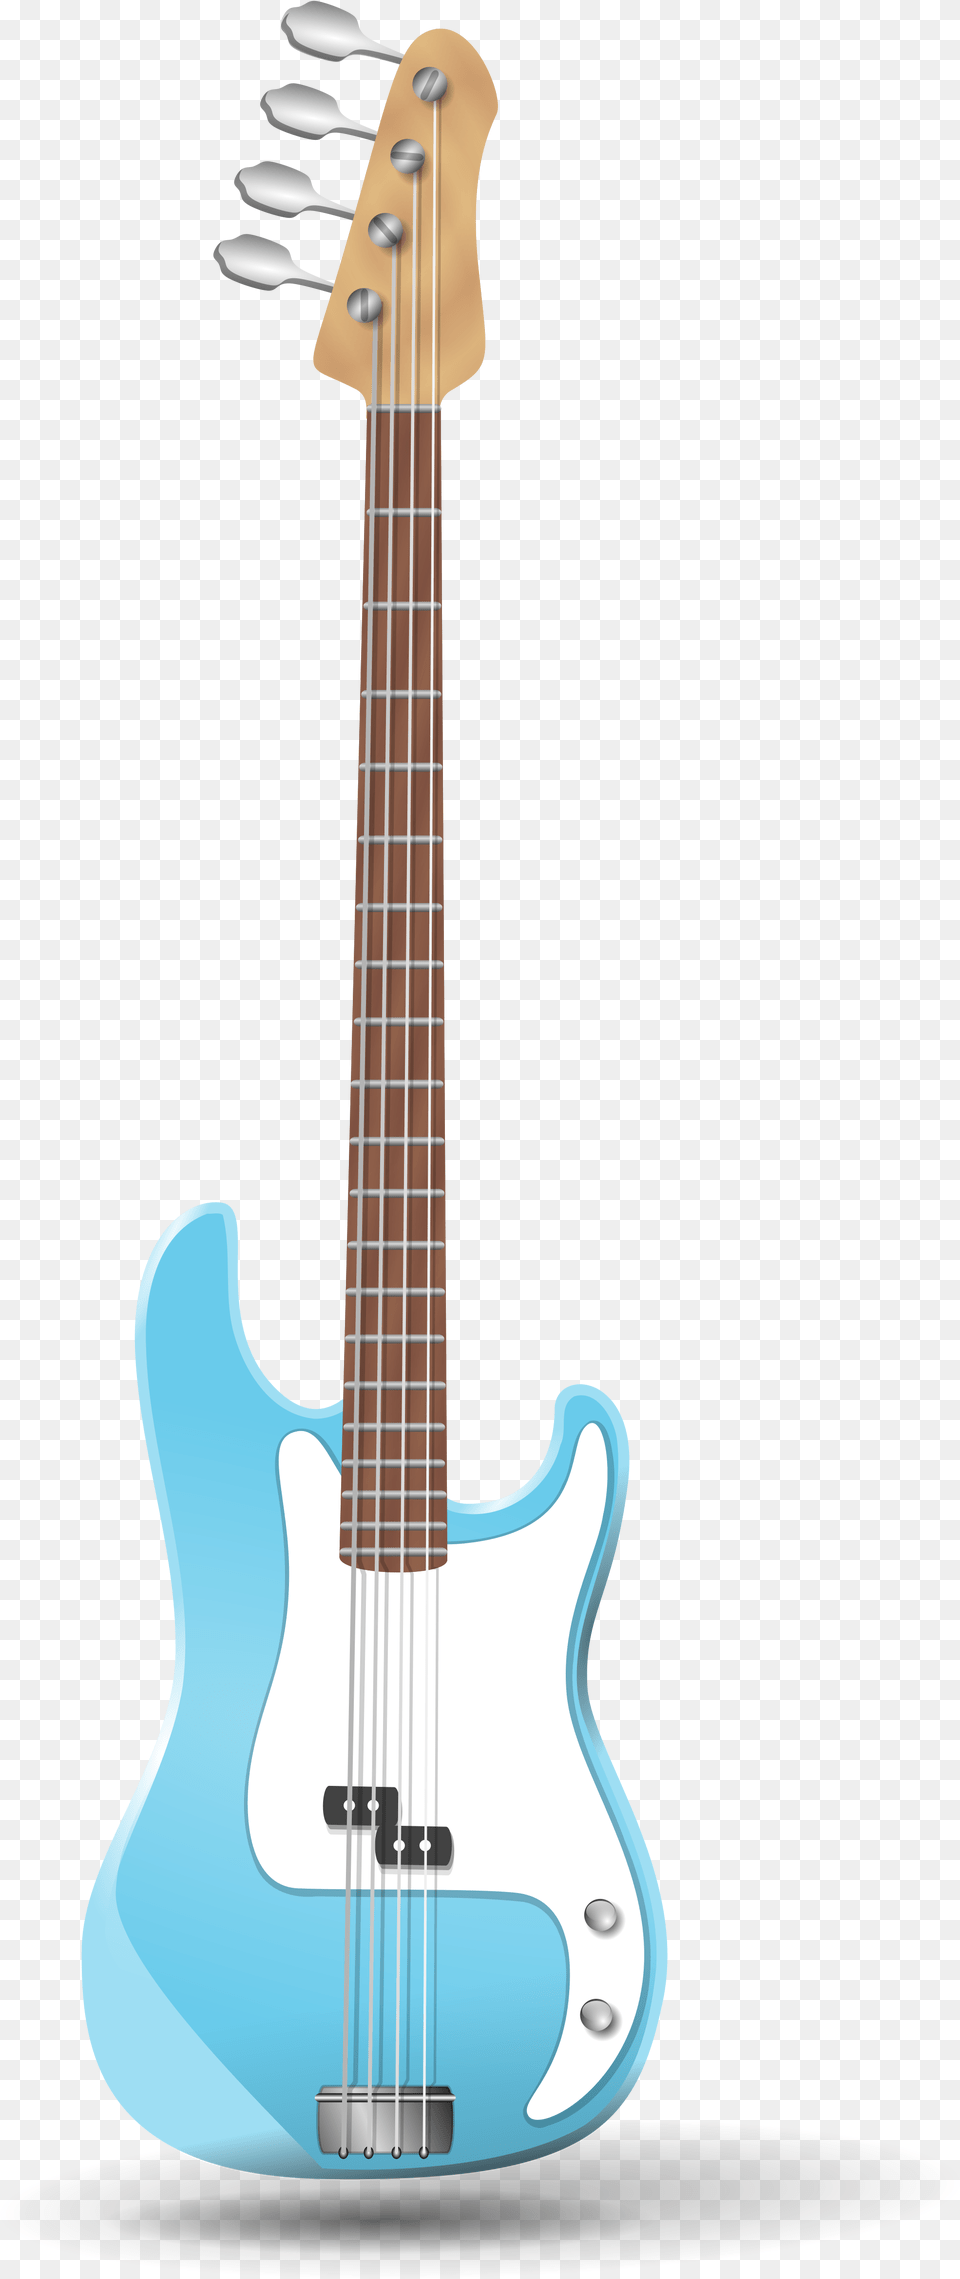 Clipart Guitar Bass Guitar Bass Guitar Clip Art, Bass Guitar, Musical Instrument Png